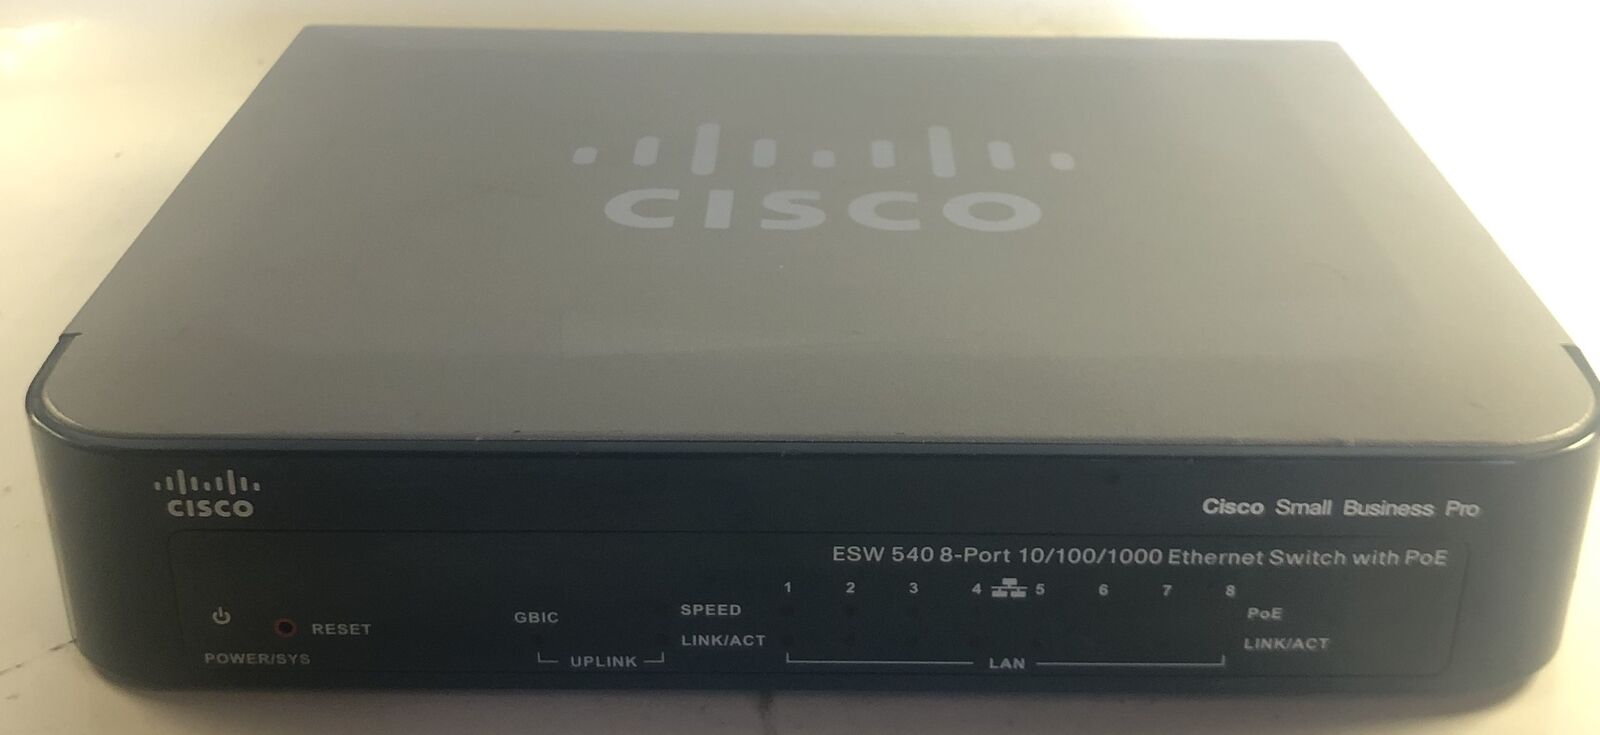 Cisco Small Business Pro ESW 540 8-Port Ethernet Switch with PoE- ESW-540-8P-K9